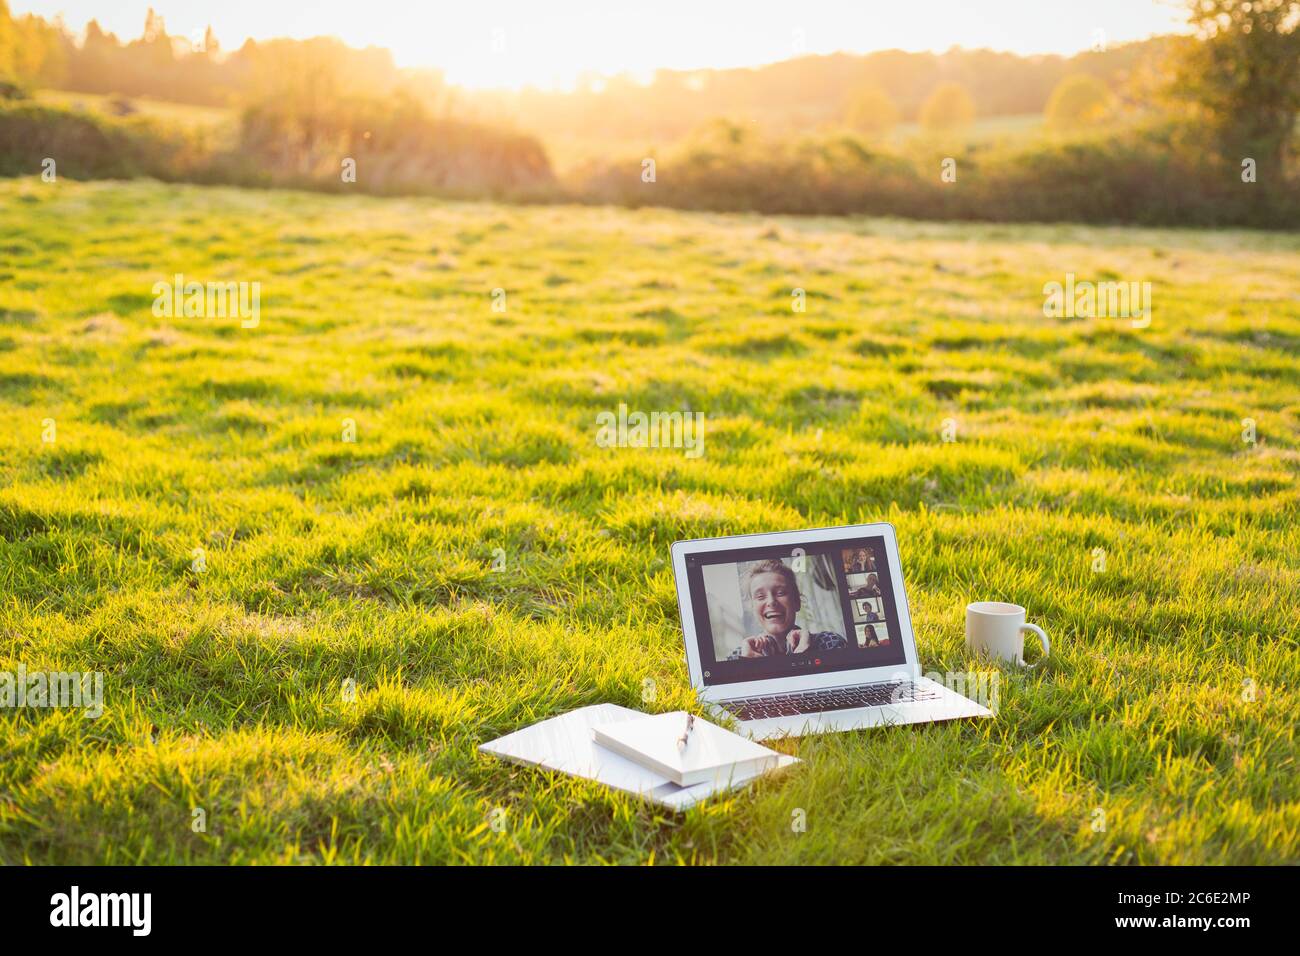 Chat video degli amici sullo schermo del computer portatile in erba soleggiato Foto Stock